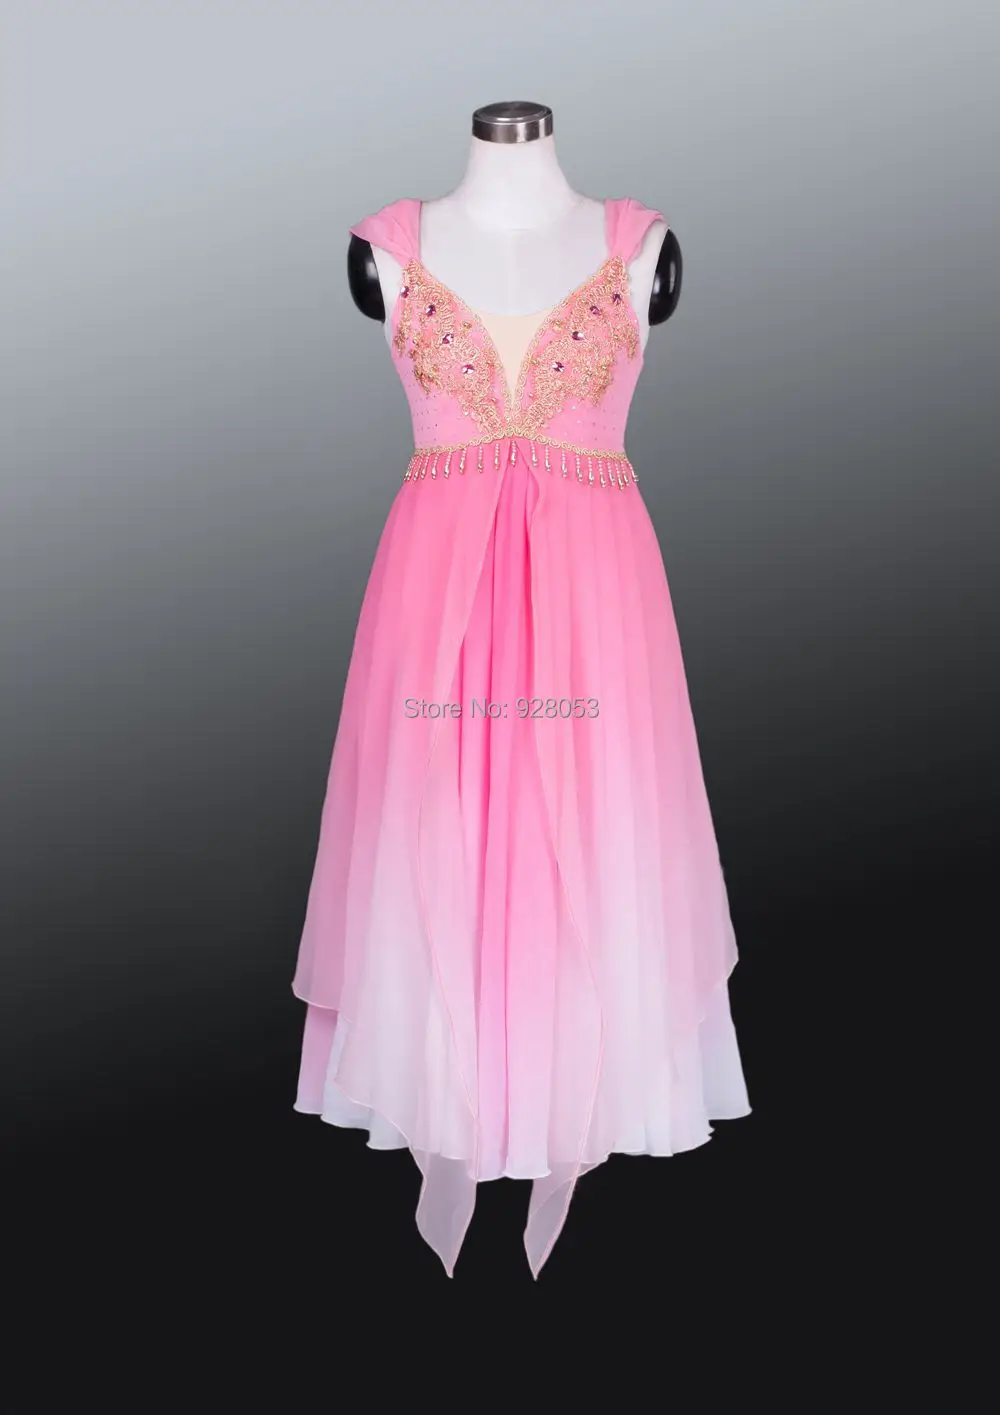 Юбка-пачка для взрослых женский халат трико розового цвета с подкладкой балетные